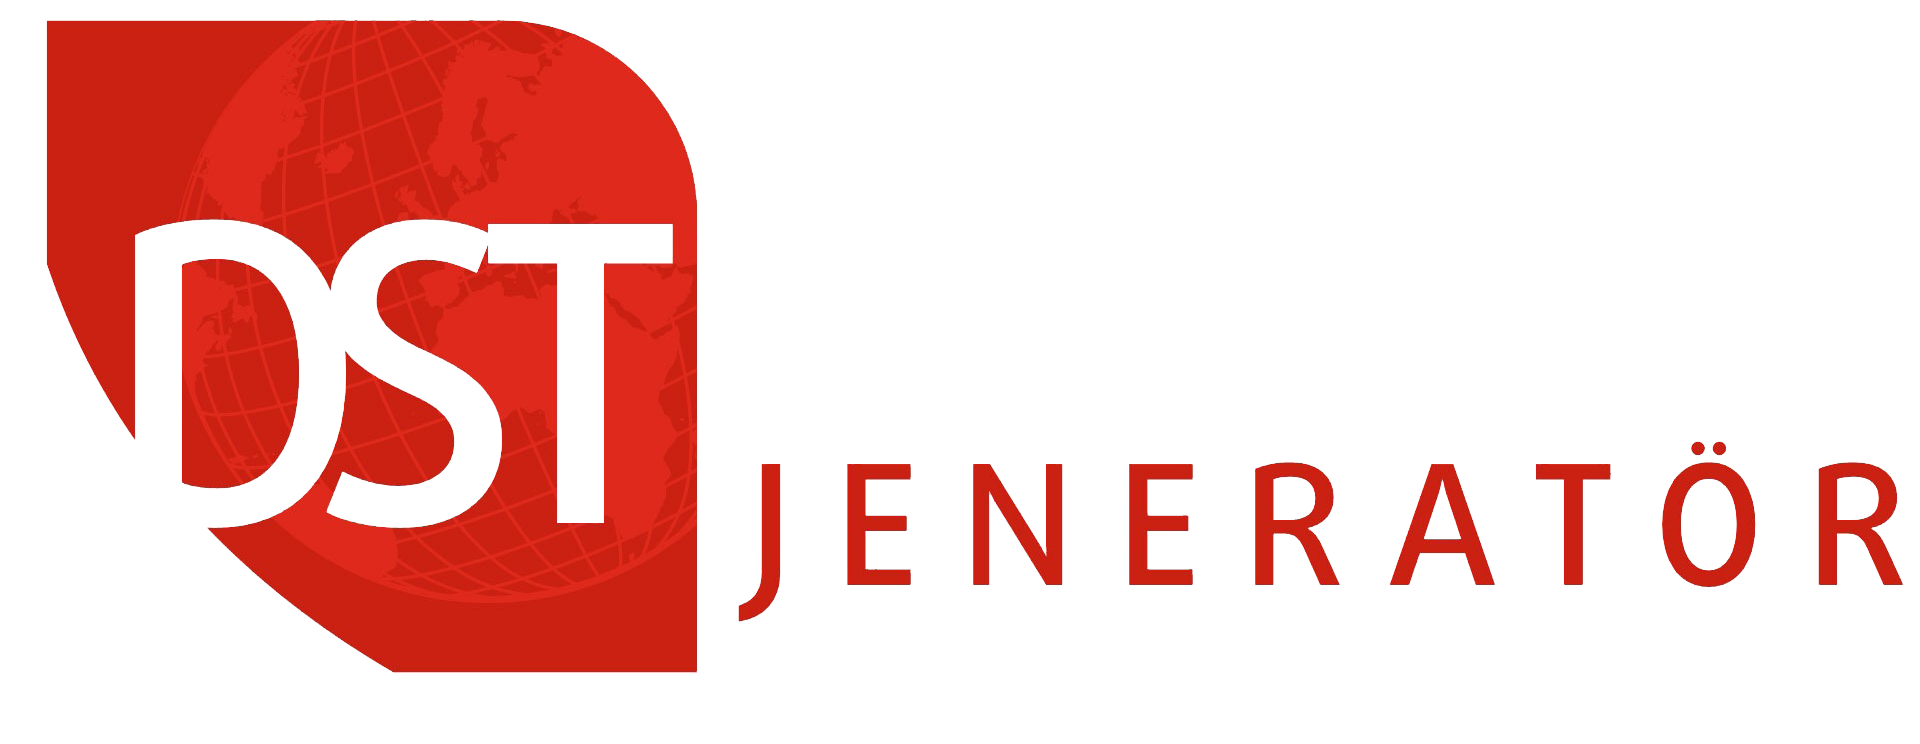 DST Power Jeneratör